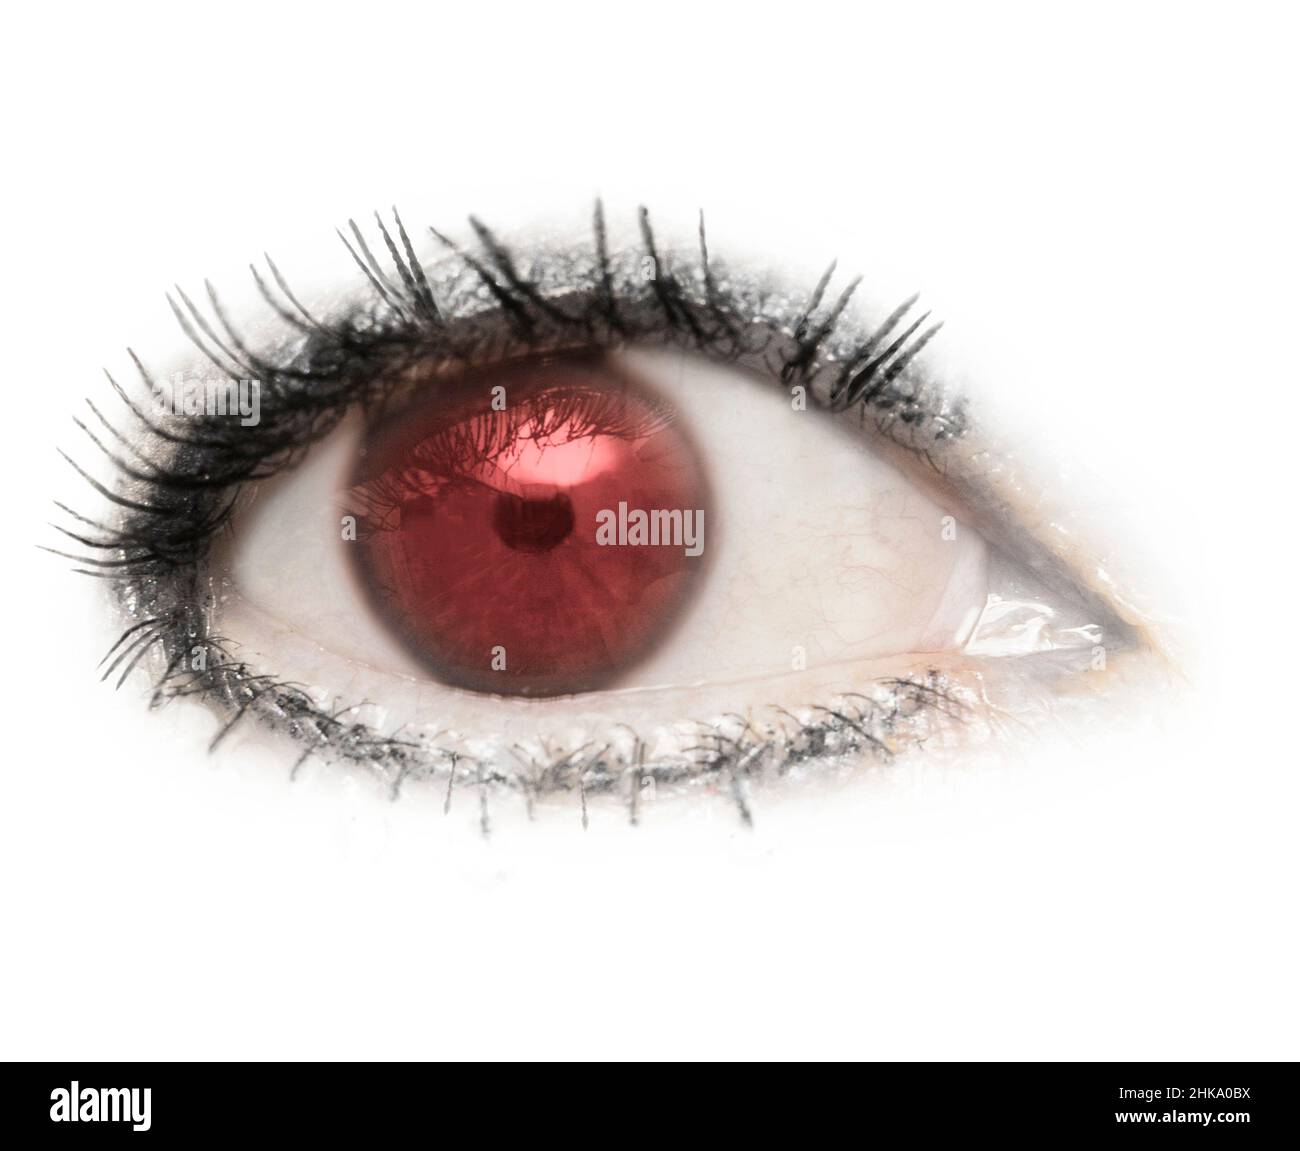 Un œil, un œil, un œil rouge, un œil rouge, isolé avec des cils sur un fond blanc.Paupière,pupille,sclère,iris. Banque D'Images